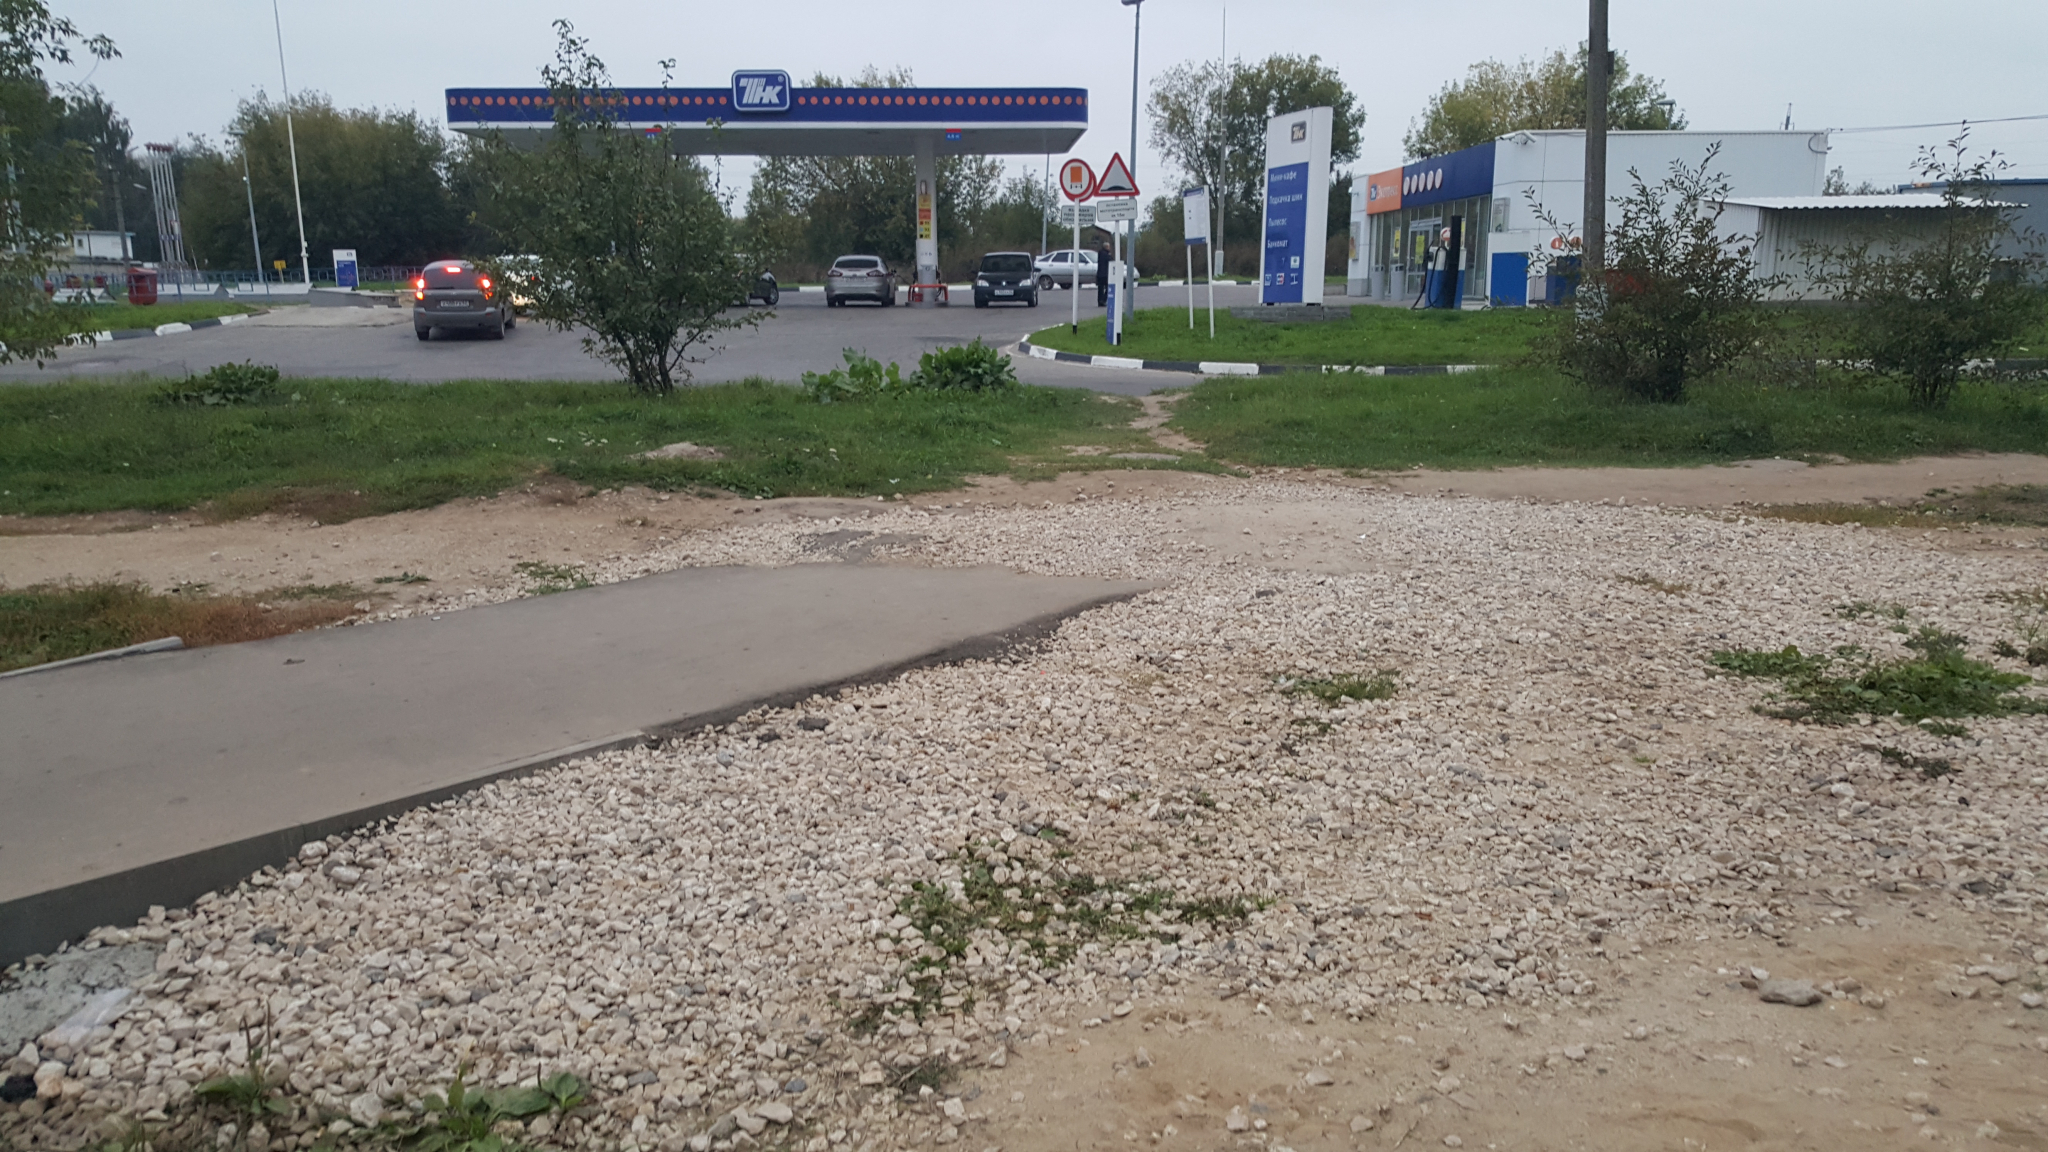 "Дорога в никуда" - жителей Канищева разозлил тротуар, ведущий в тупик